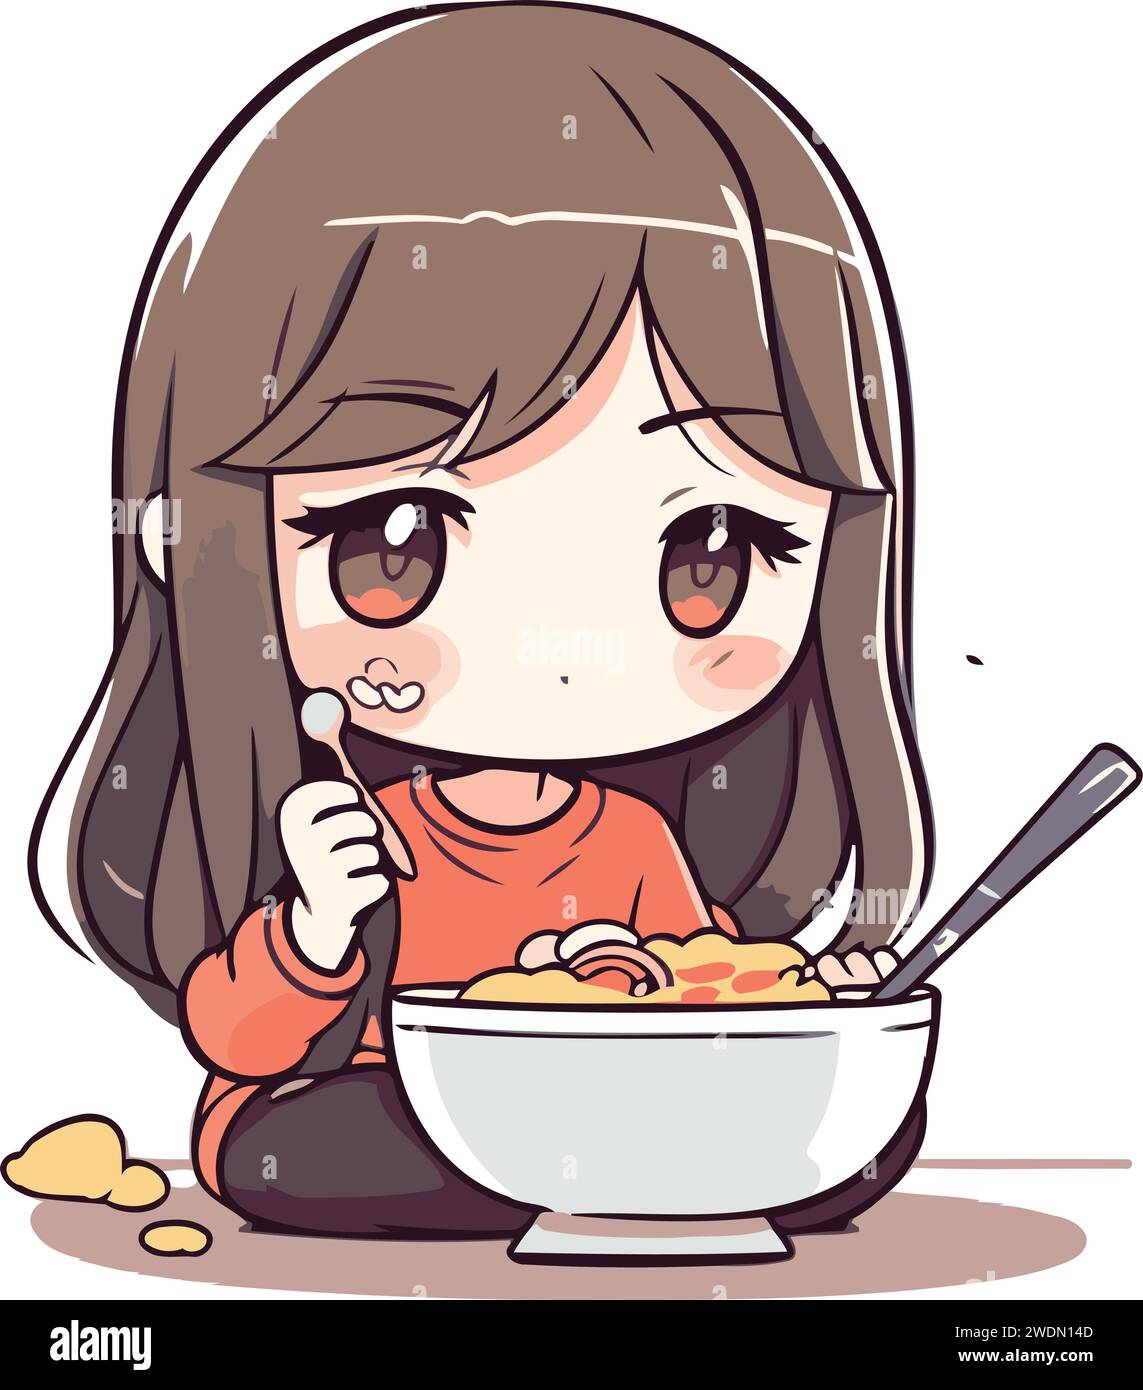 Illustrazione di una bambina che mangia una ciotola di noodles Illustrazione Vettoriale